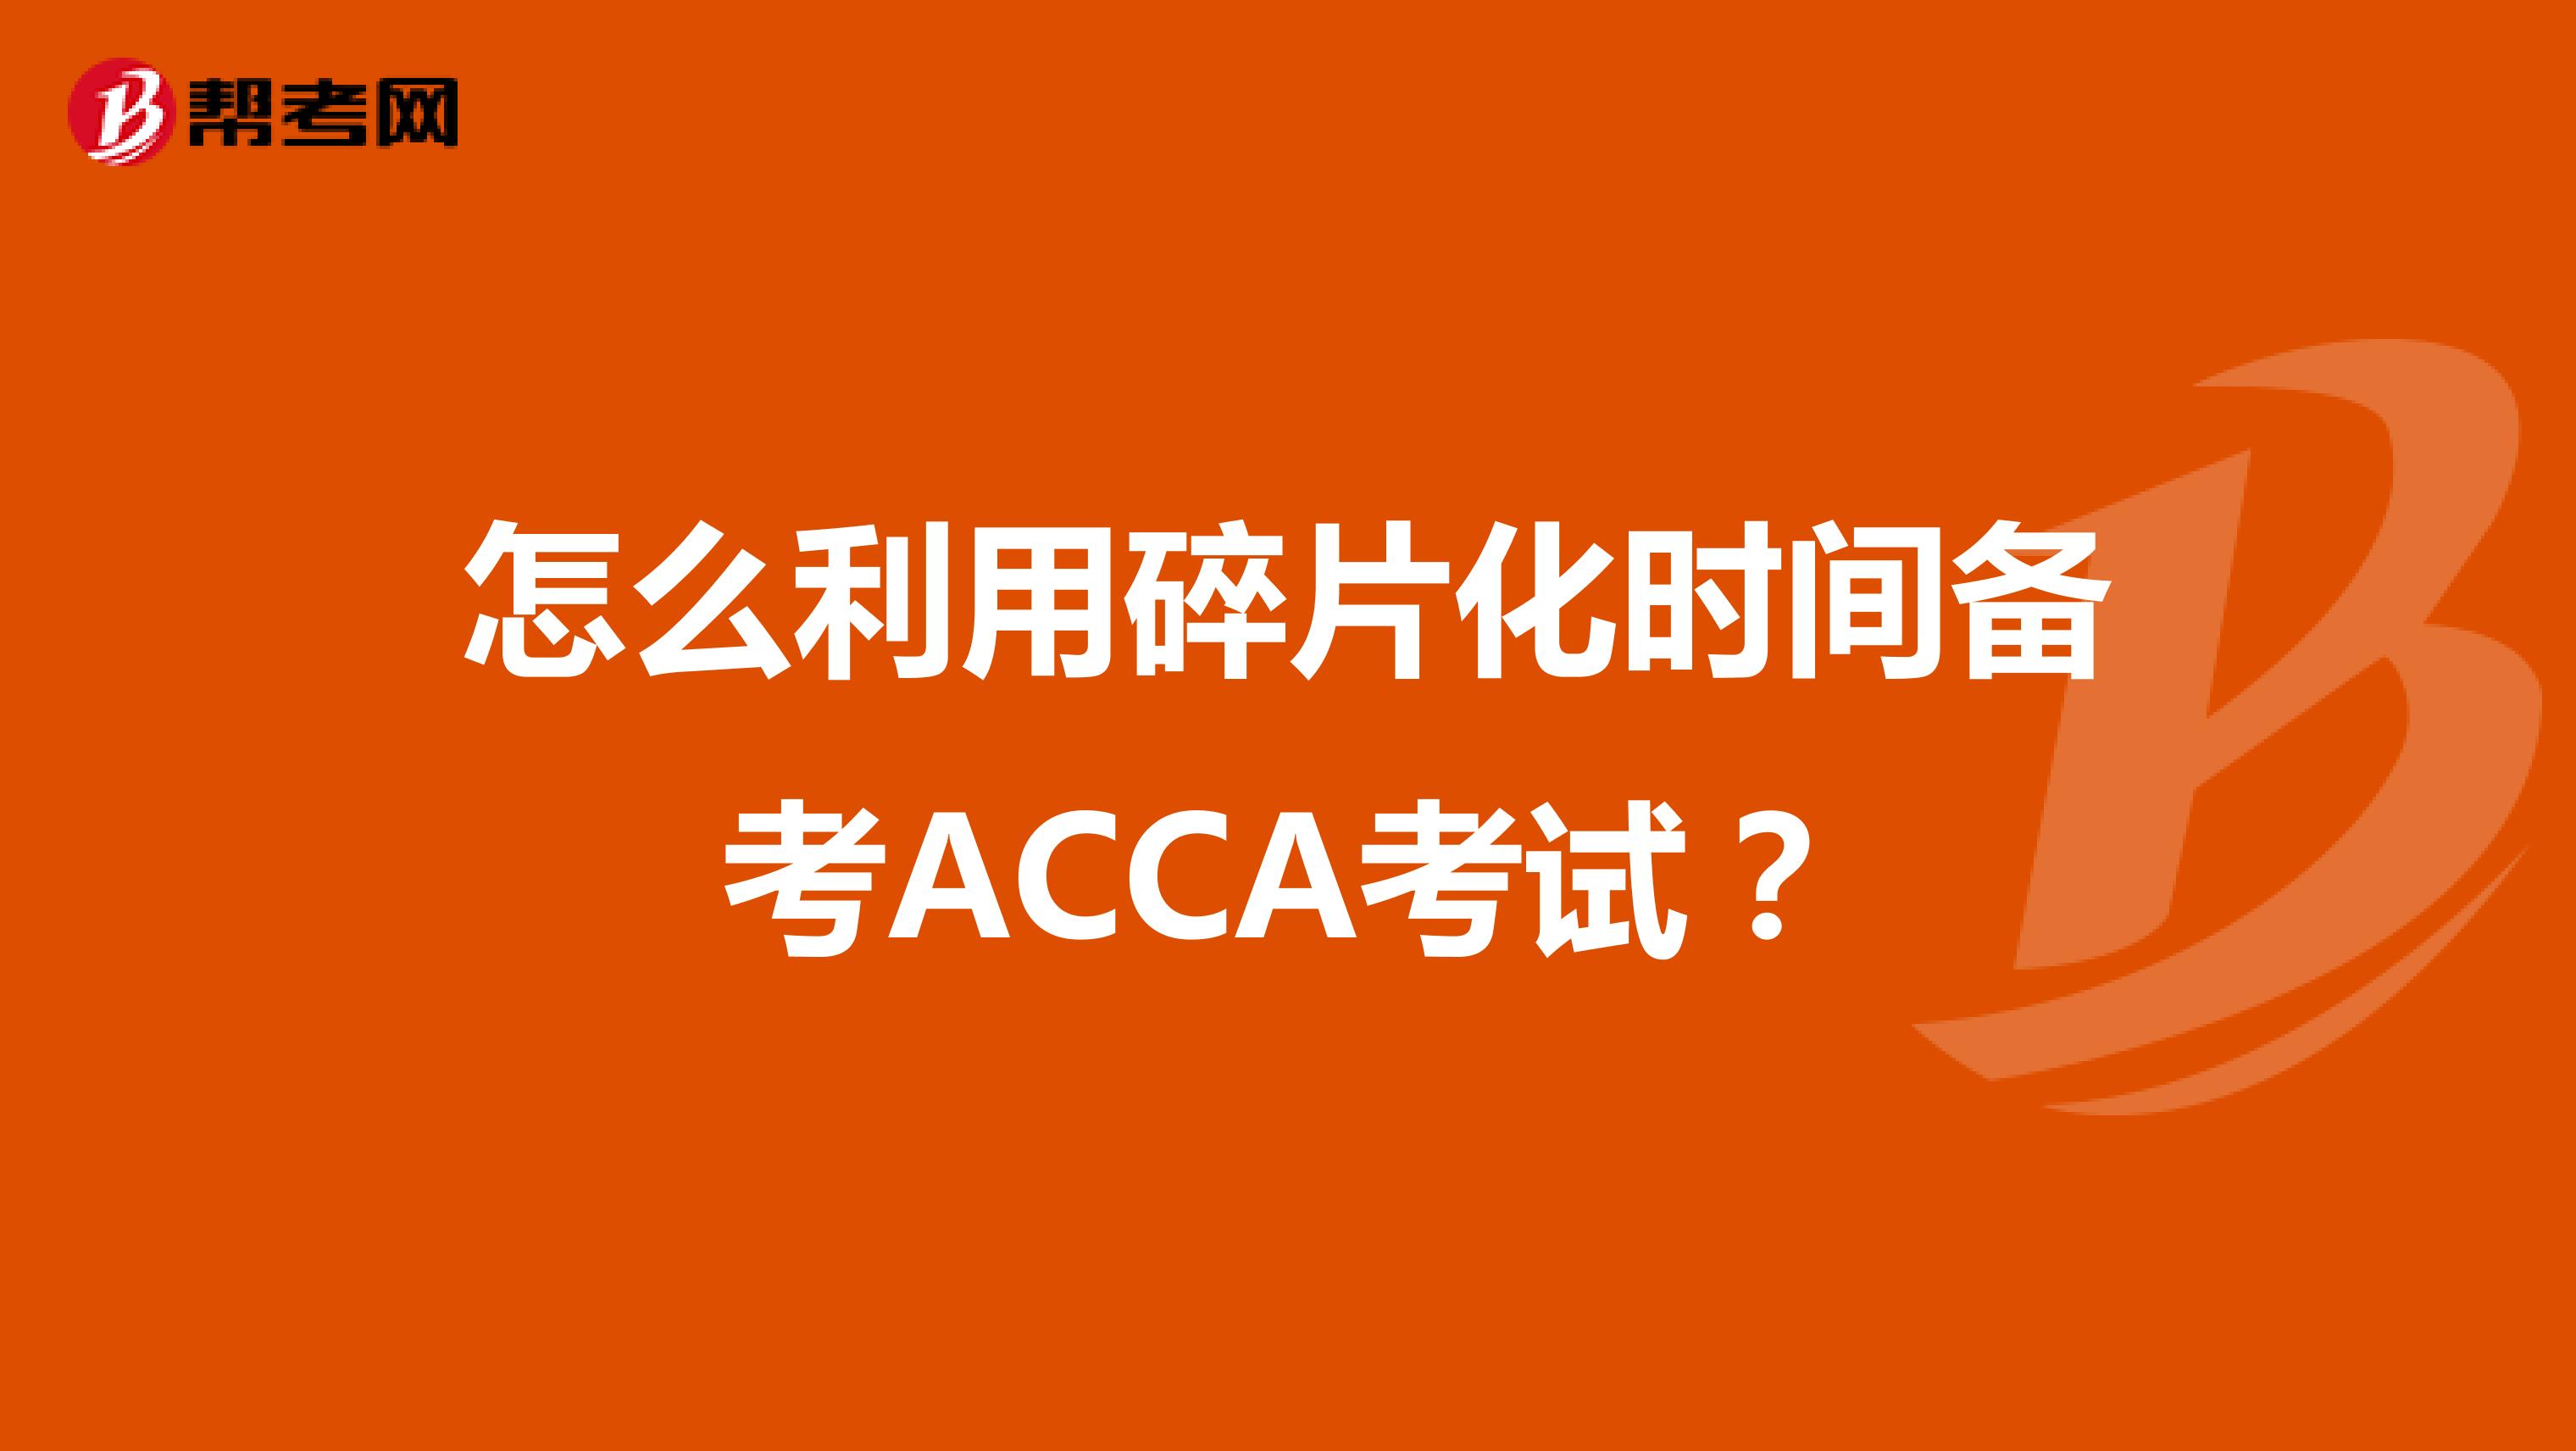 怎么利用碎片化时间备考ACCA考试？